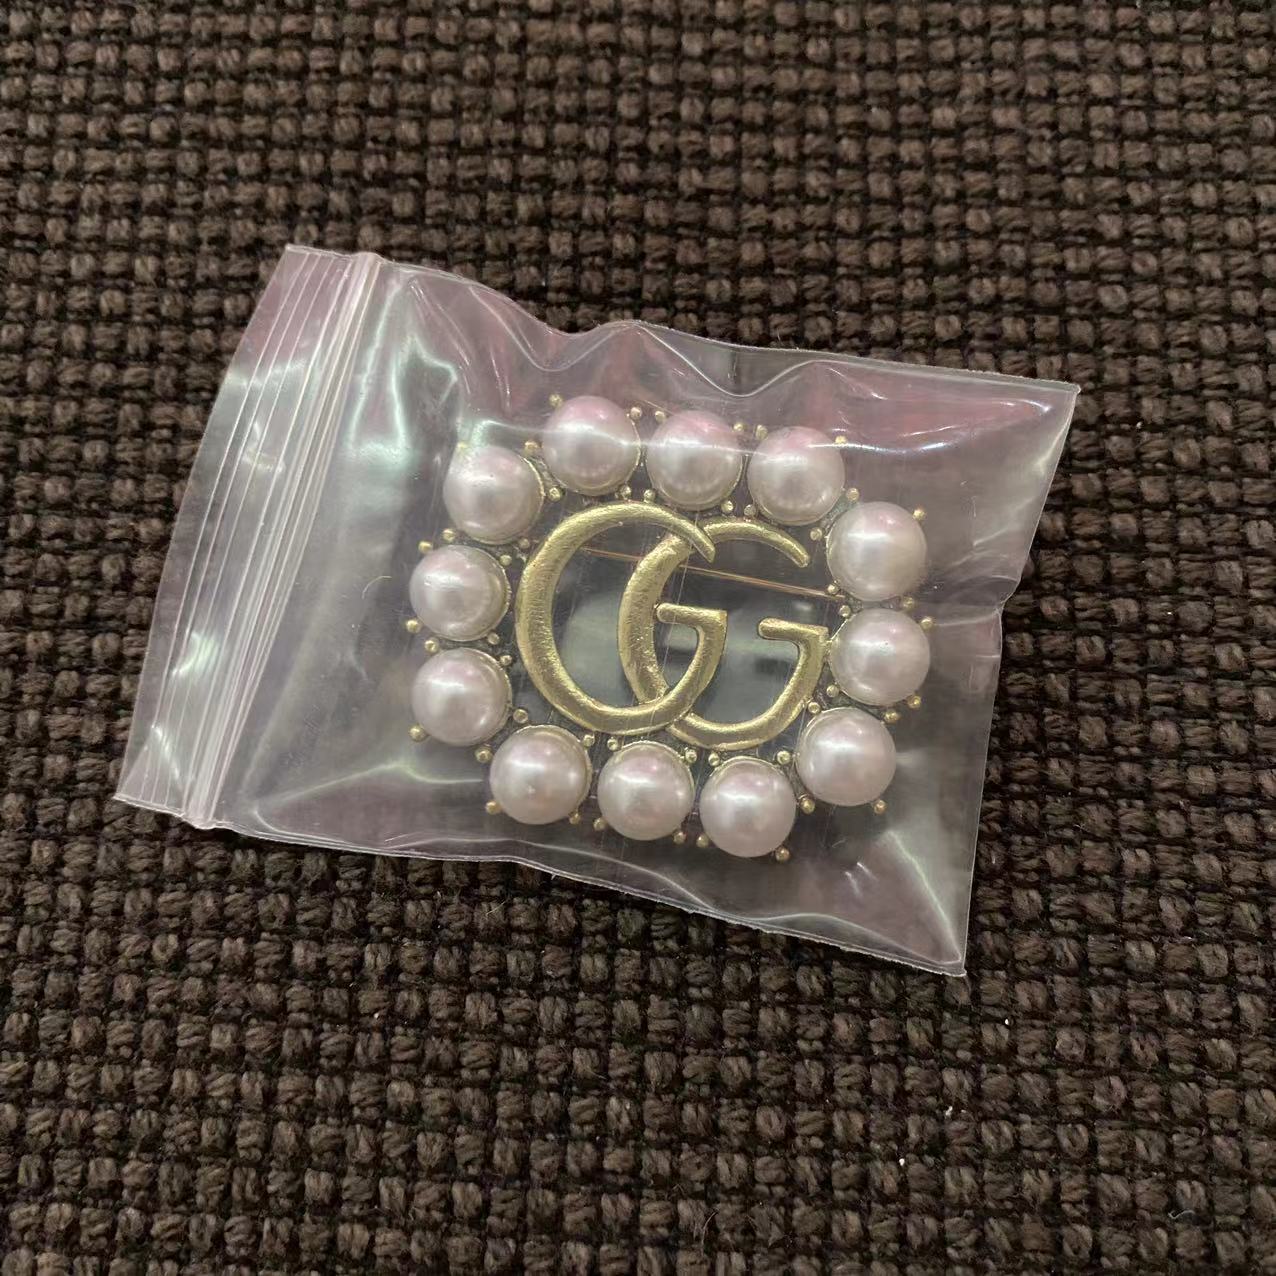 Big sale! New Gucci pearls brooch